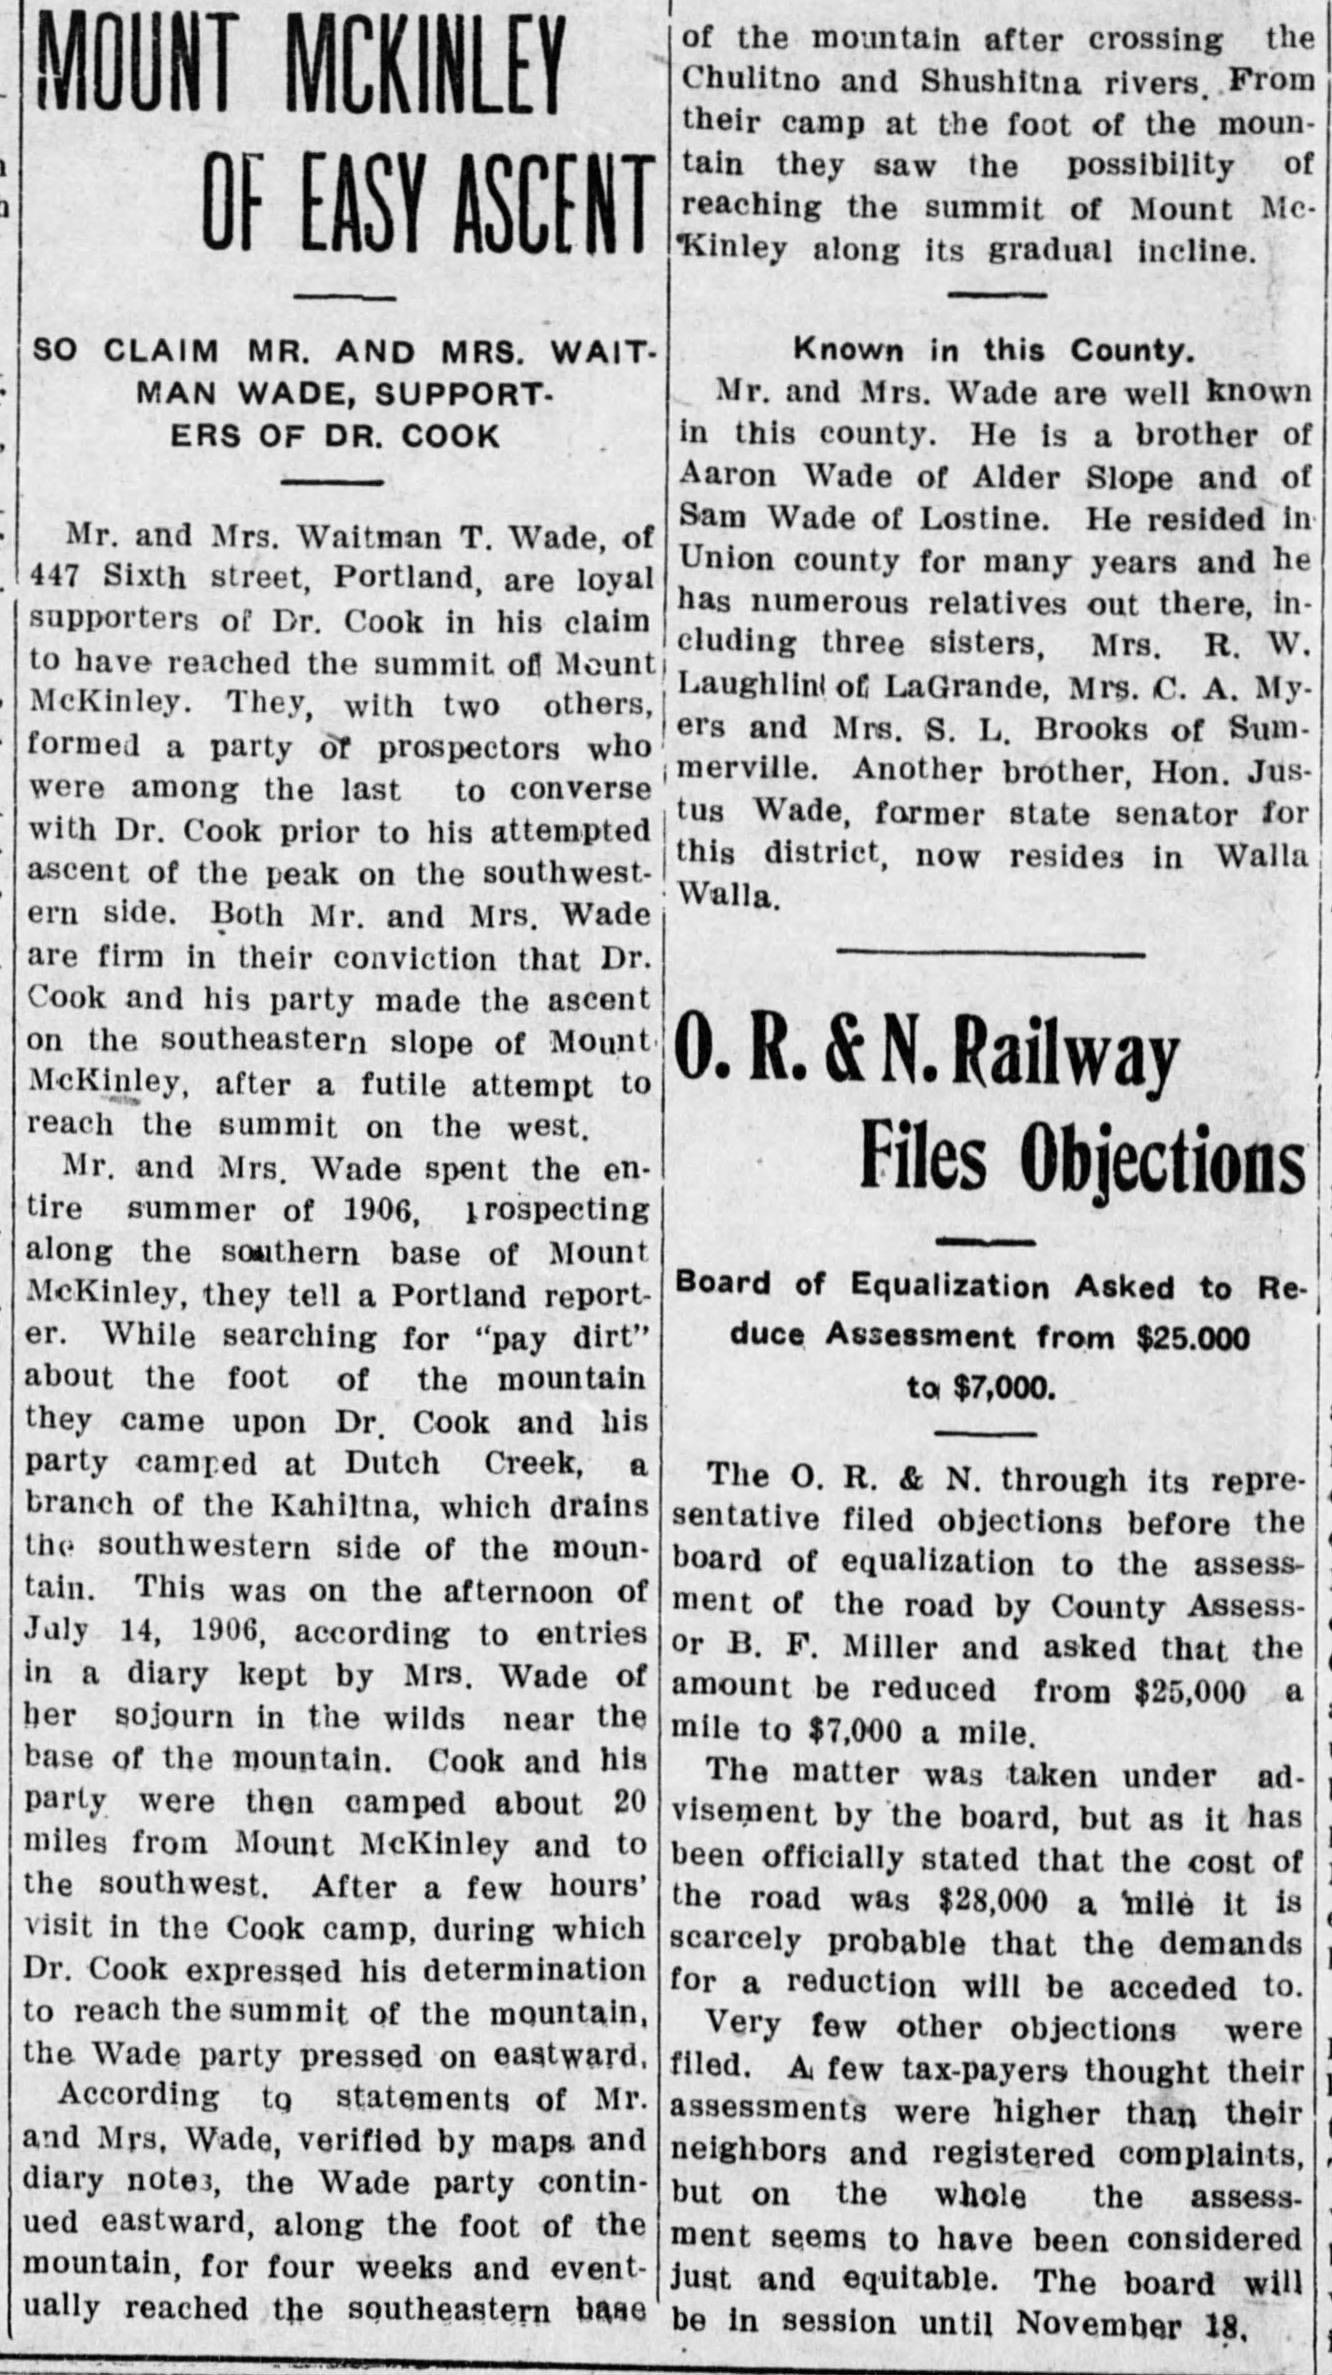 Enterprise News-Record Article - Nov 3 1909